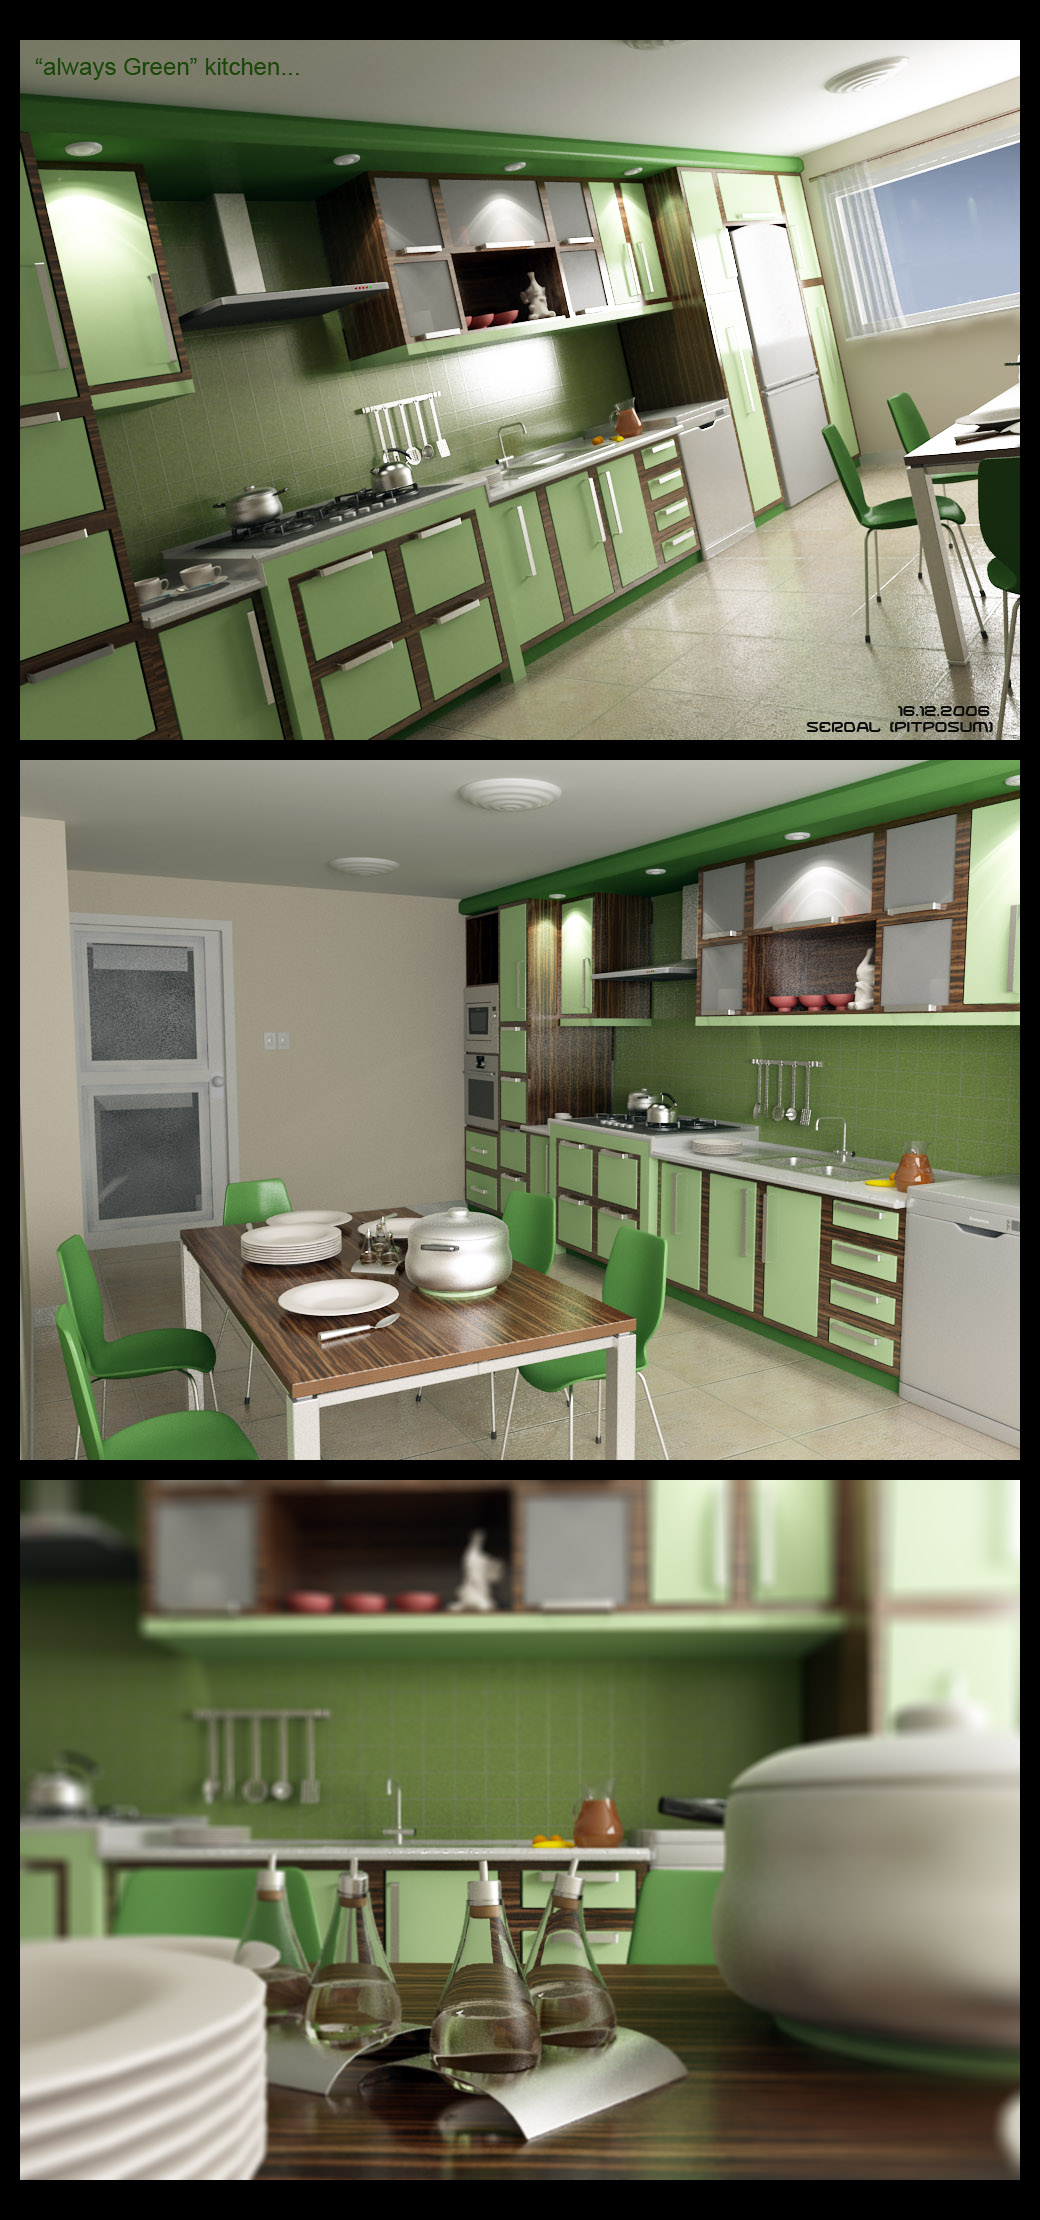 http://rozup.ir/up/tarrahi-khaneh/Pictures/Teen-Room-Designs/Kitchen-Design-Ideas-Set-2/114.jpg